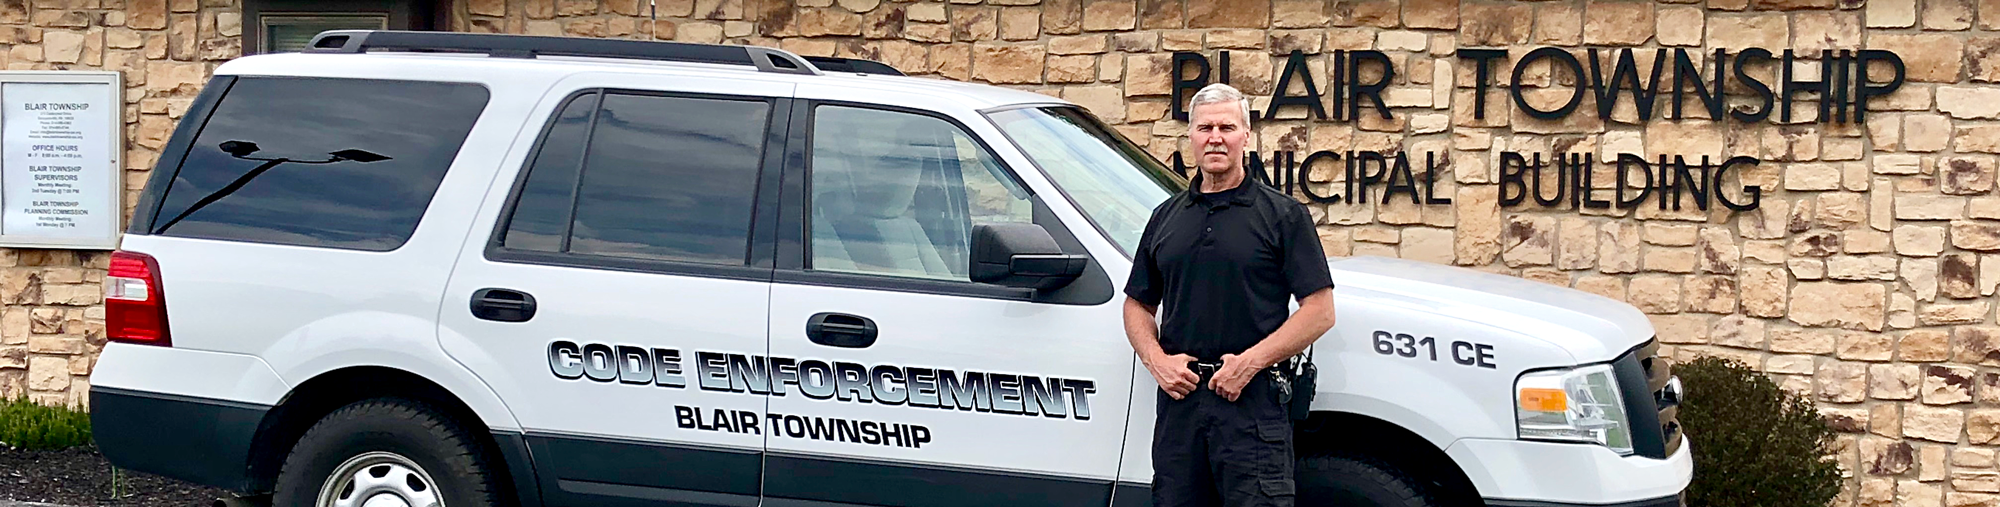 Code Enforcement Ordinances Blair Township